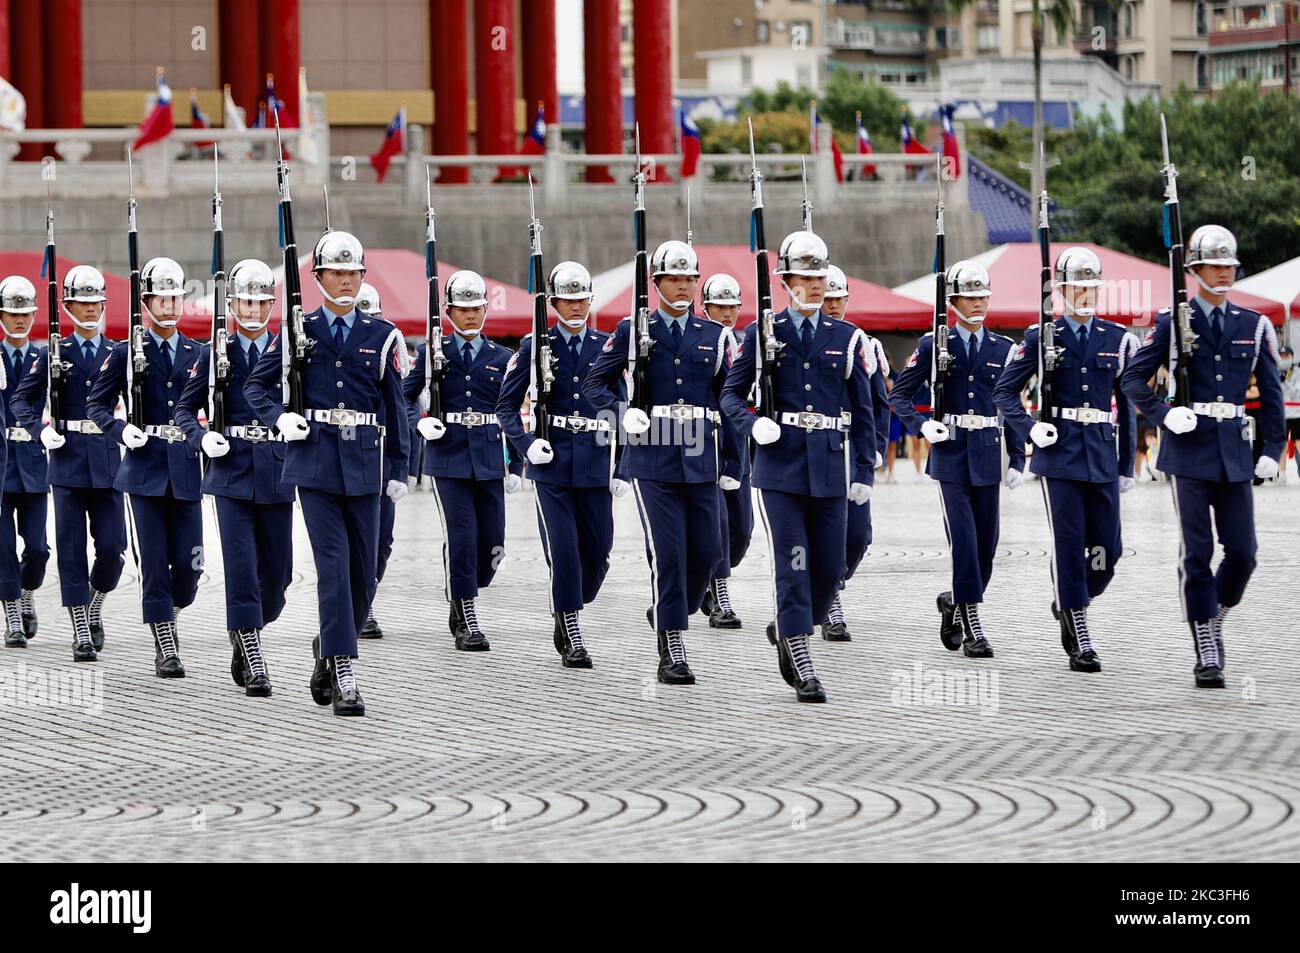 Les gardiens d'honneur (d'honneur) des trois-services se sont rendus lors d'un événement de promotion de l'éducation patriotique et de recrutement de nouveaux membres pour des organisations et instituts militaires, sur la place historique de la liberté, à Taipei City, Taïwan, le 7 novembre 2020. Les gardiens d'honneur sont composés de membres de la Force aérienne, de la Marine et de l'Armée de terre. (Photo de CEng Shou Yi/NurPhoto) Banque D'Images